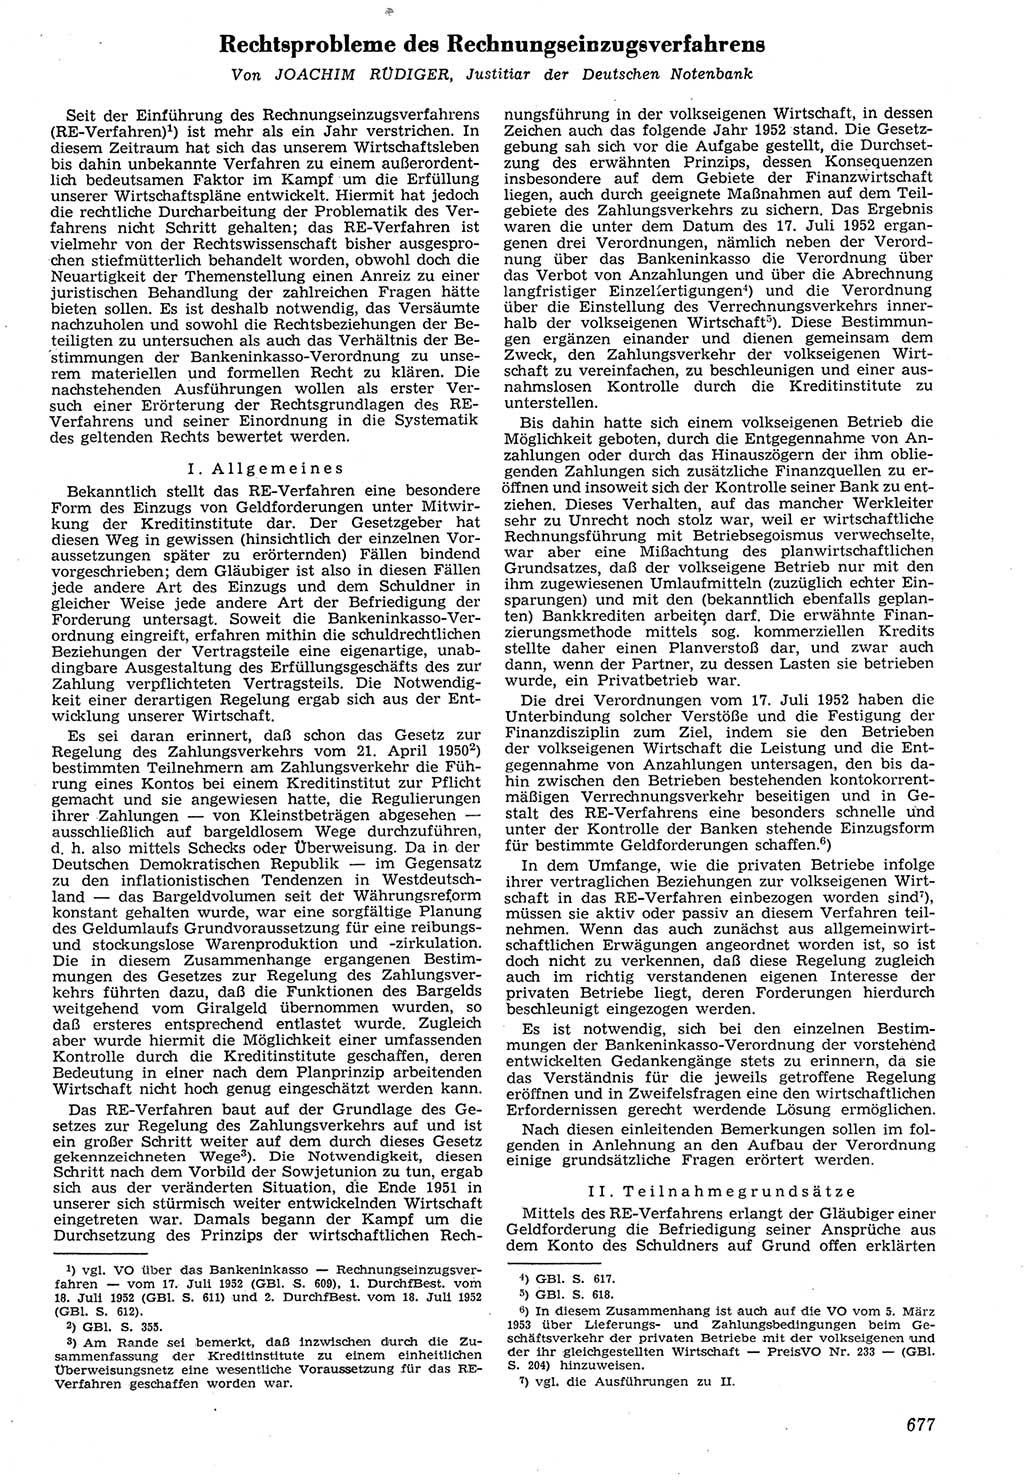 Neue Justiz (NJ), Zeitschrift für Recht und Rechtswissenschaft [Deutsche Demokratische Republik (DDR)], 7. Jahrgang 1953, Seite 677 (NJ DDR 1953, S. 677)